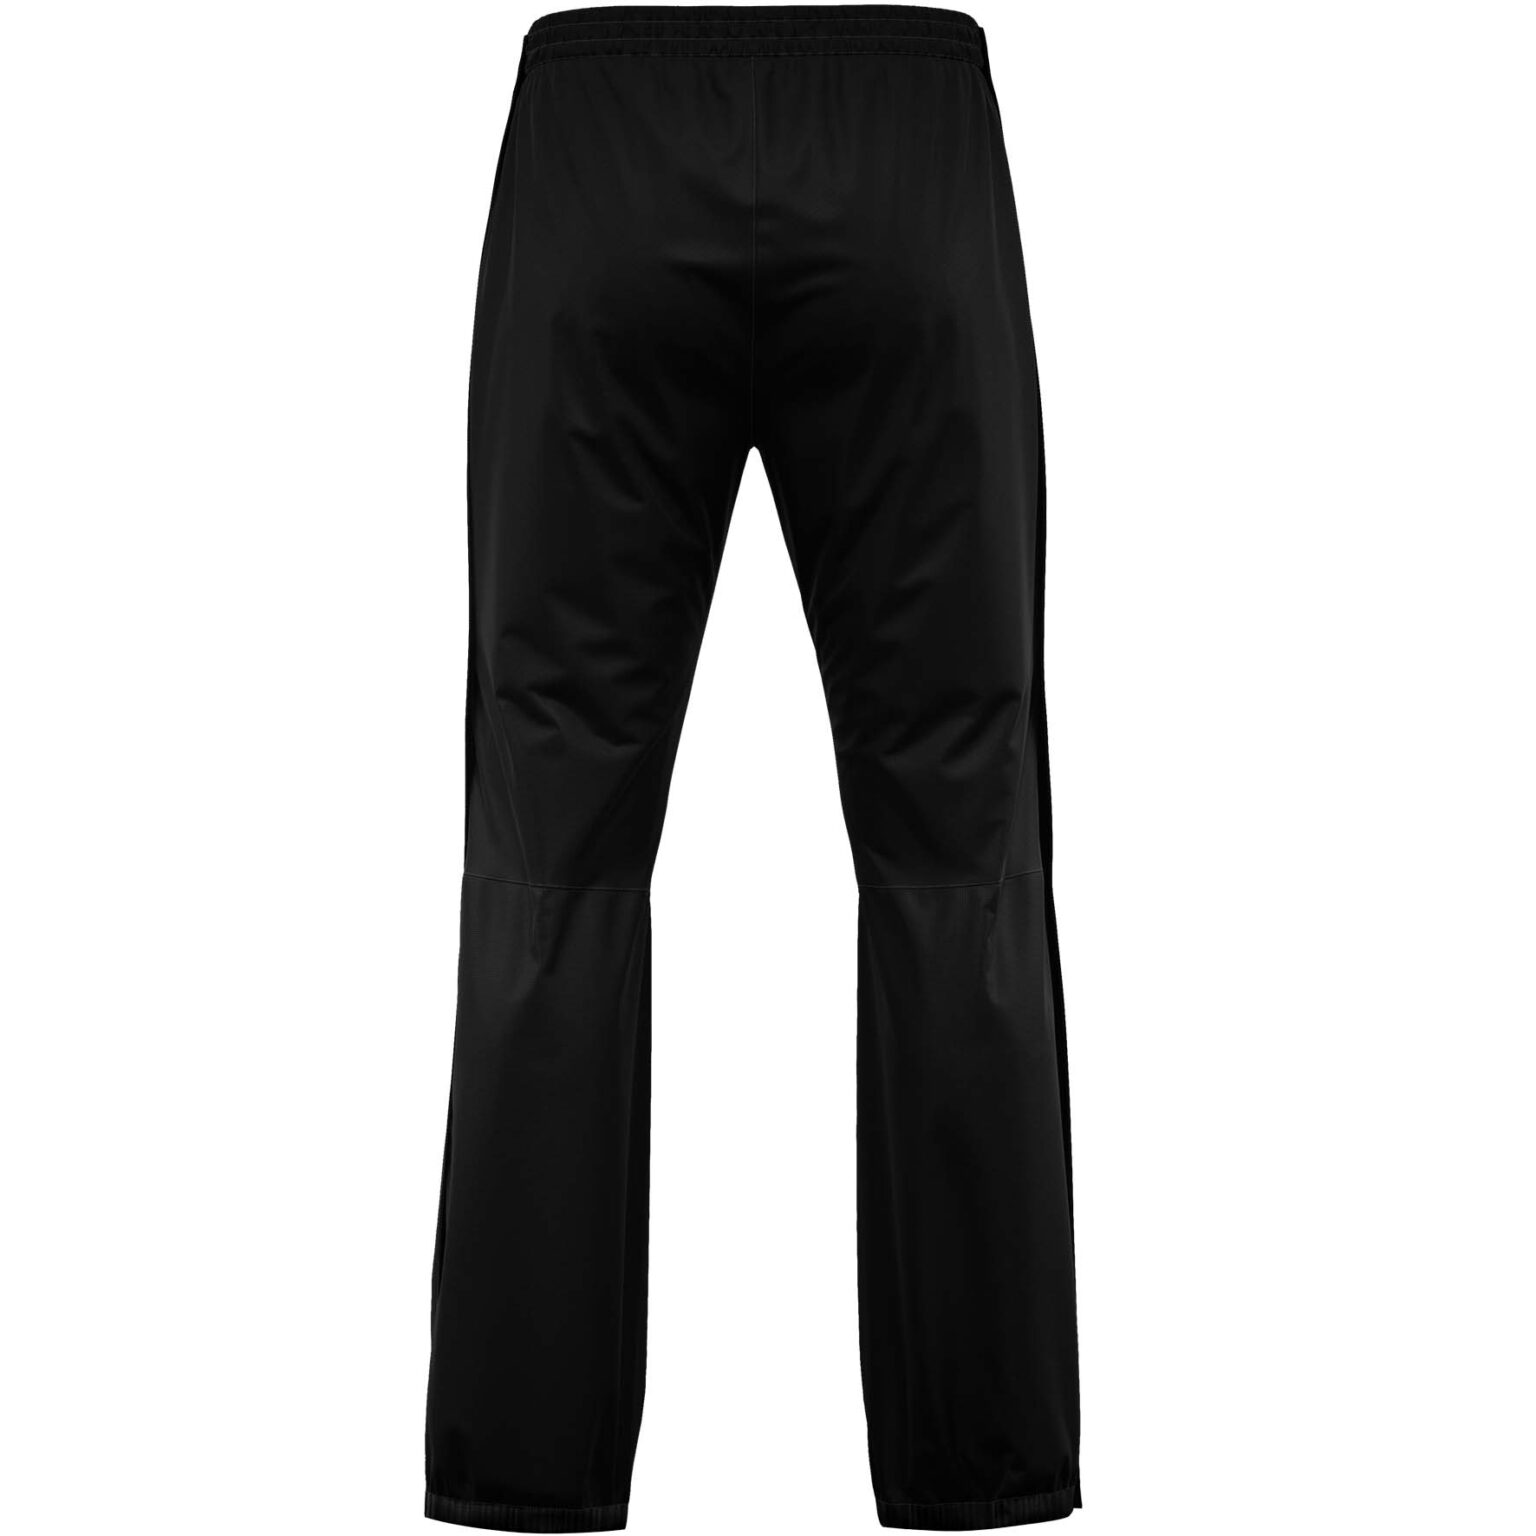 Viento - Unisex full zip rain pants - Redelk